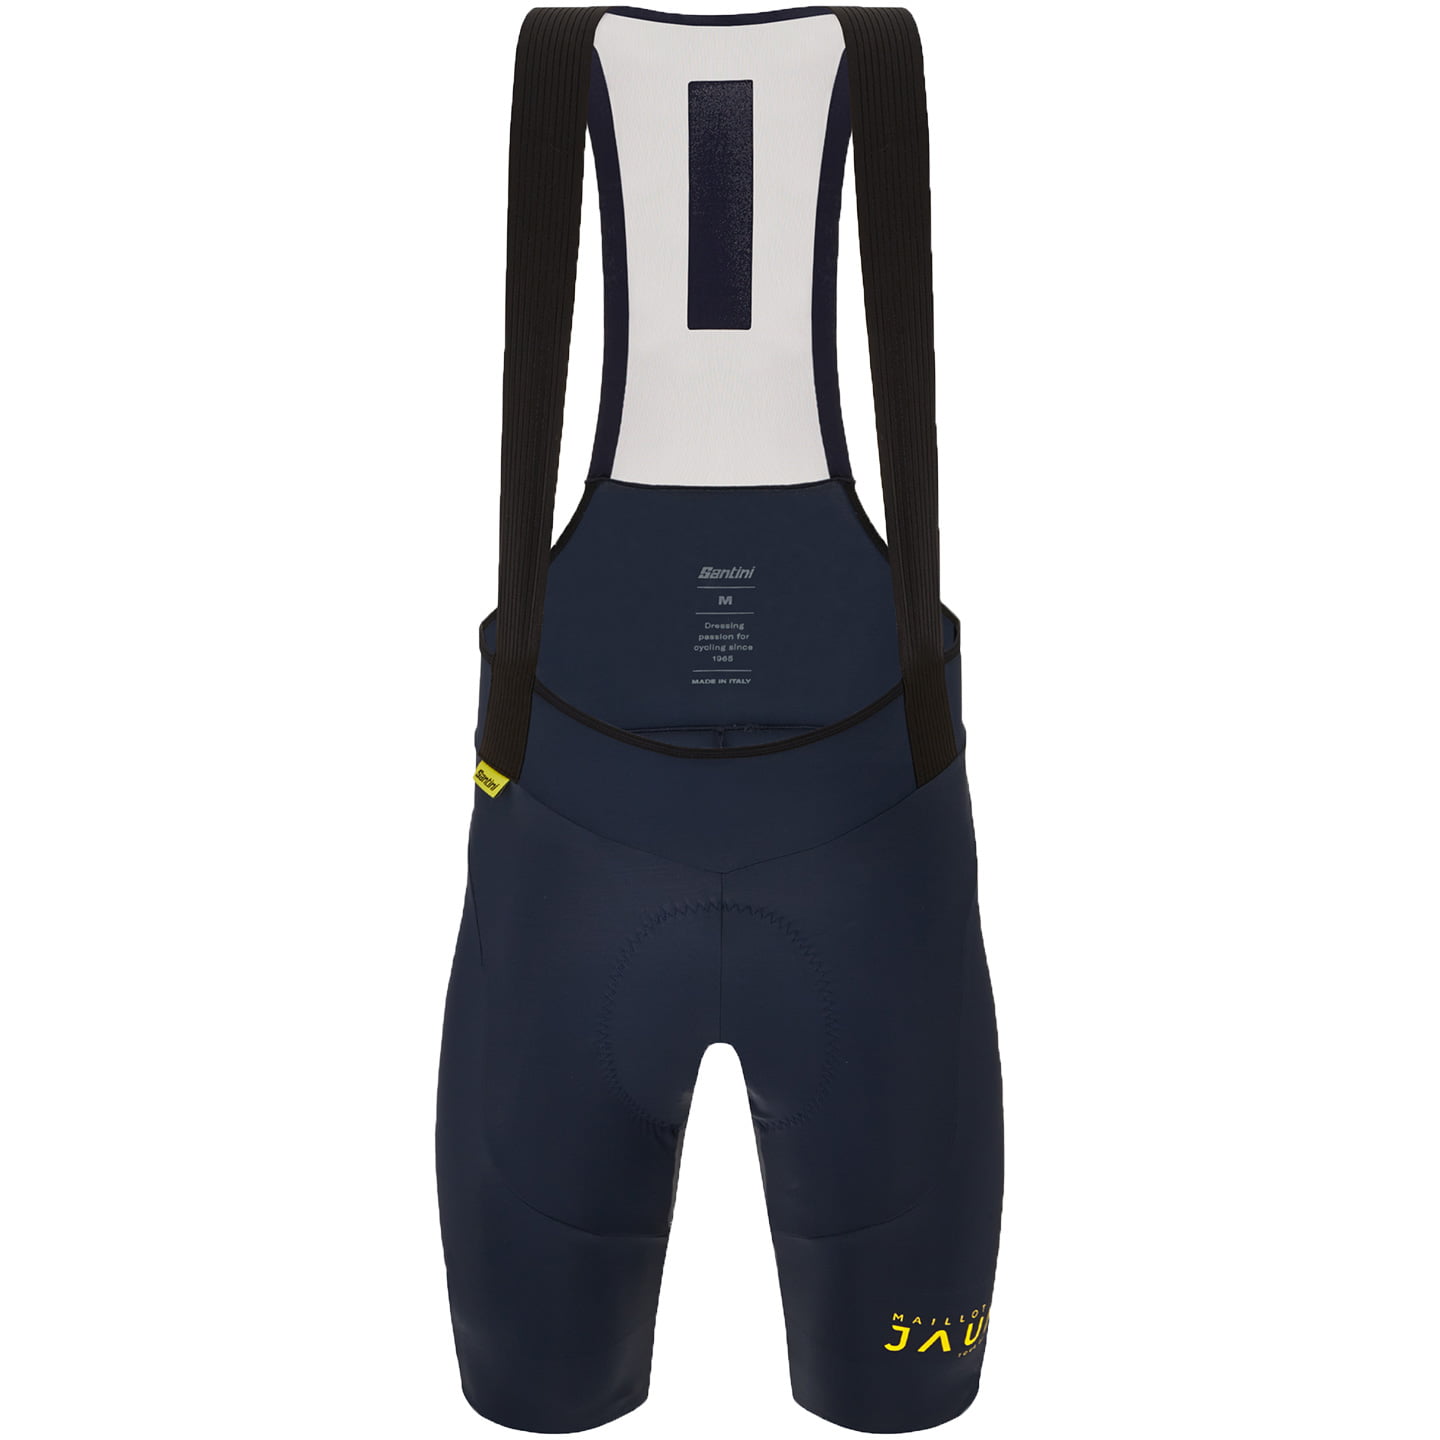 TOUR DE FRANCE Bib Shorts Le Maillot Jaune Allez 2023, for men, size M, Cycle shorts, Cycling clothing